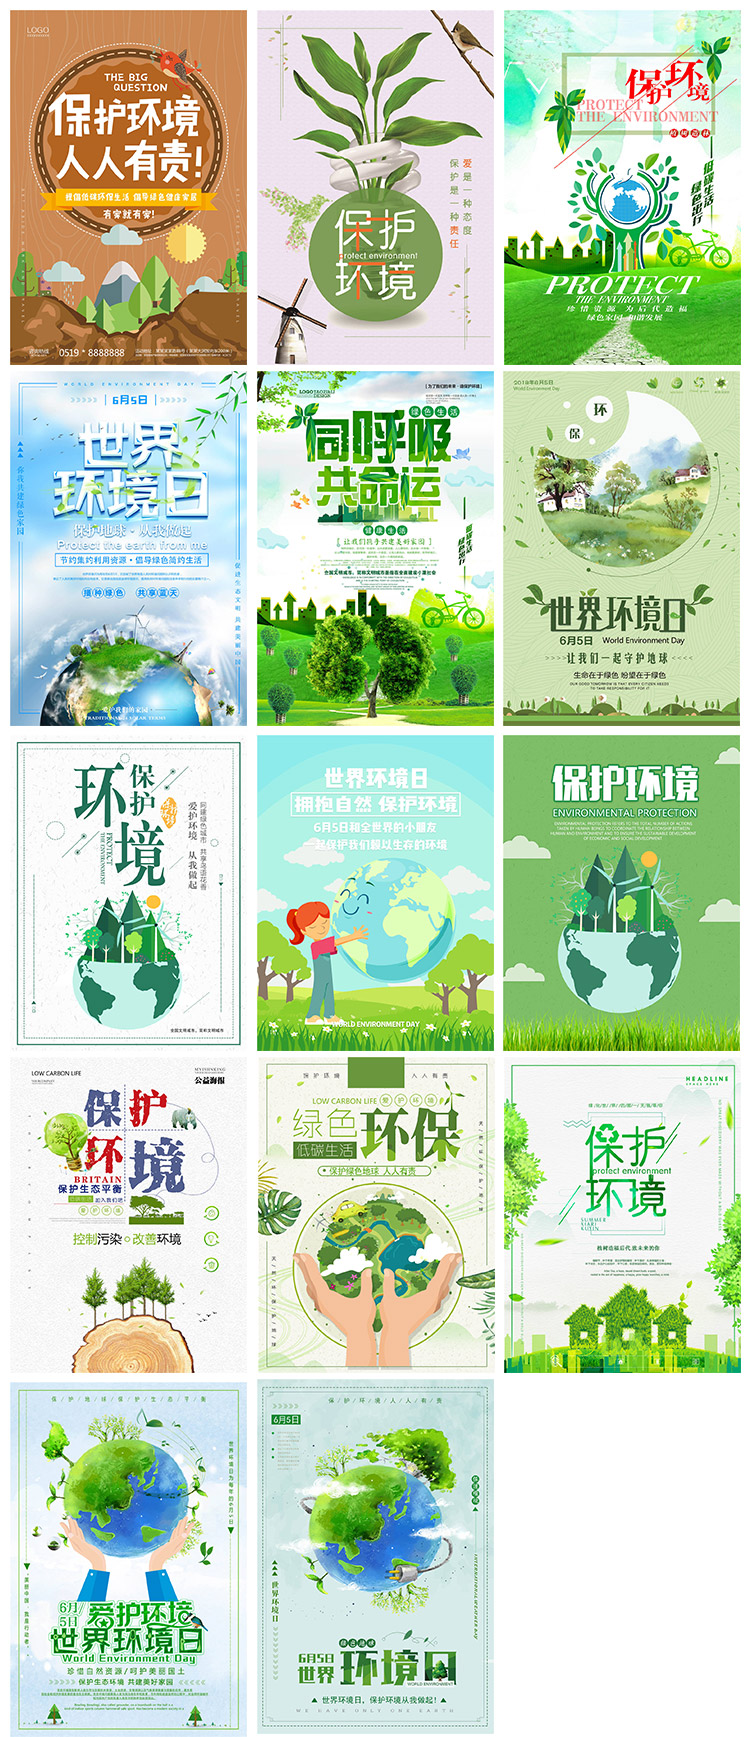 世界地球环境日环保保护森林树木公益海报设计宣传psd模板素材